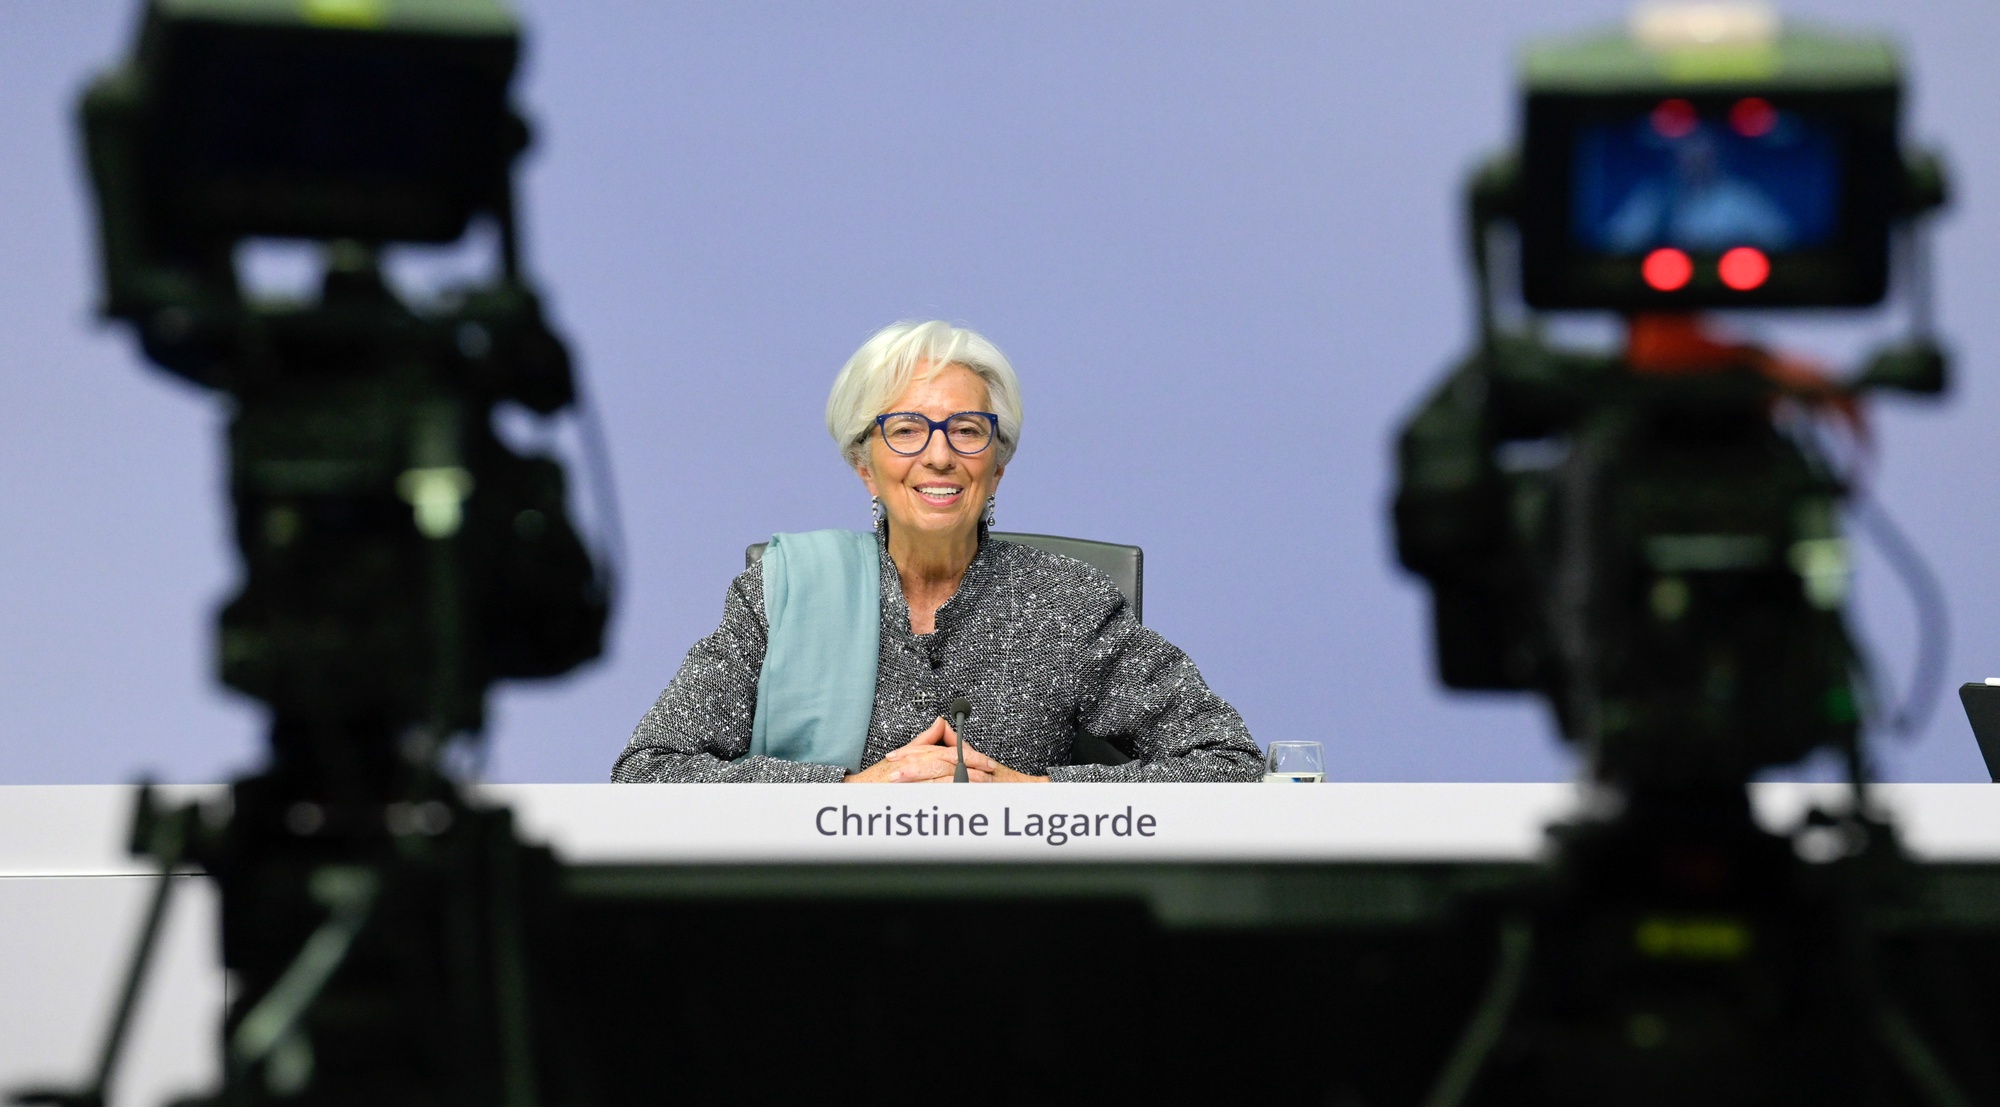 Lagarde confiante na recuperação económica europeia em 2021 – Observador